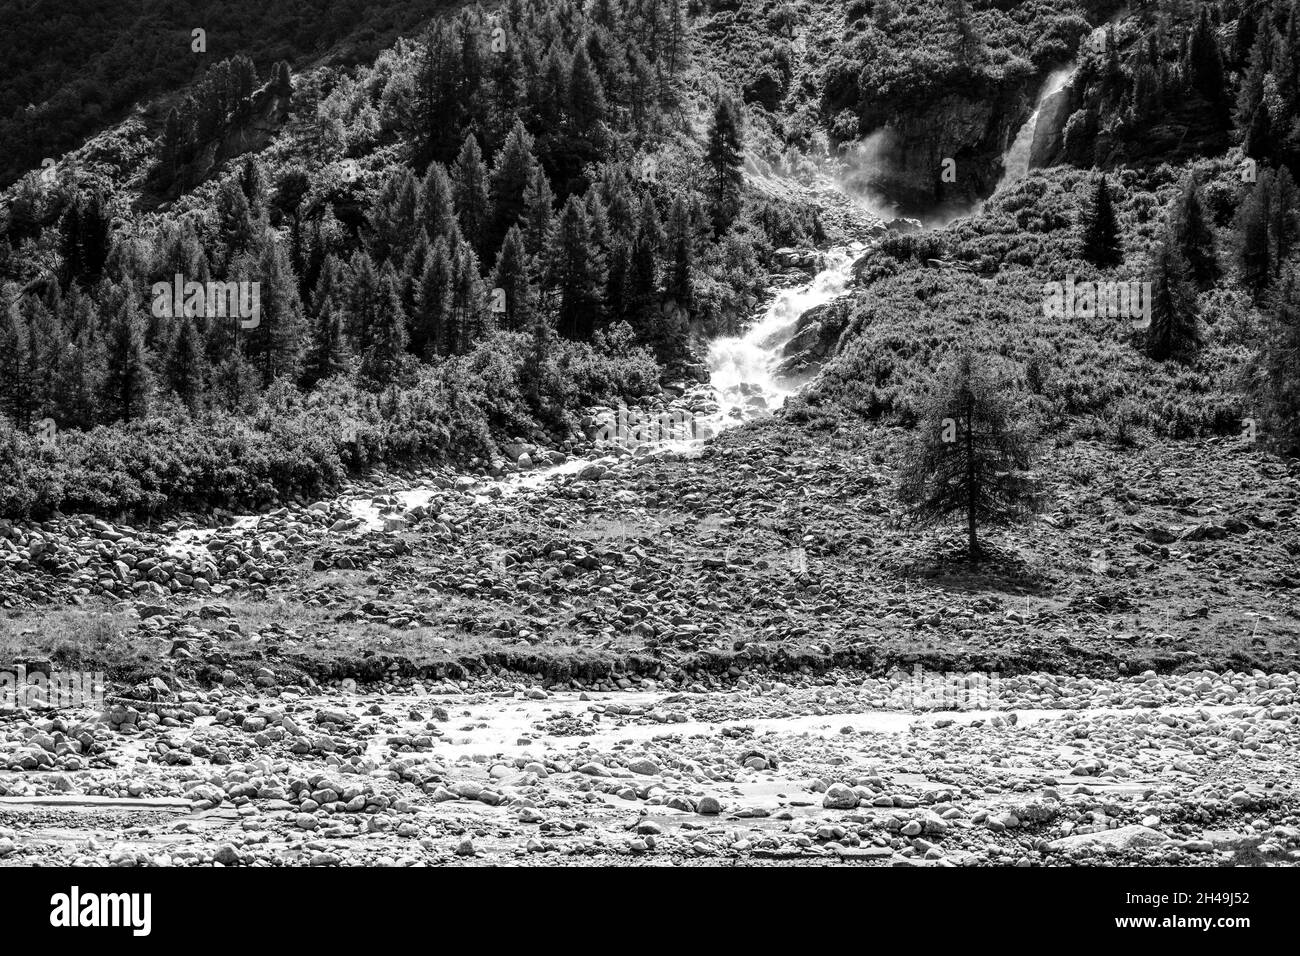 Wild alpine waterfall on mountain stream Stock Photo